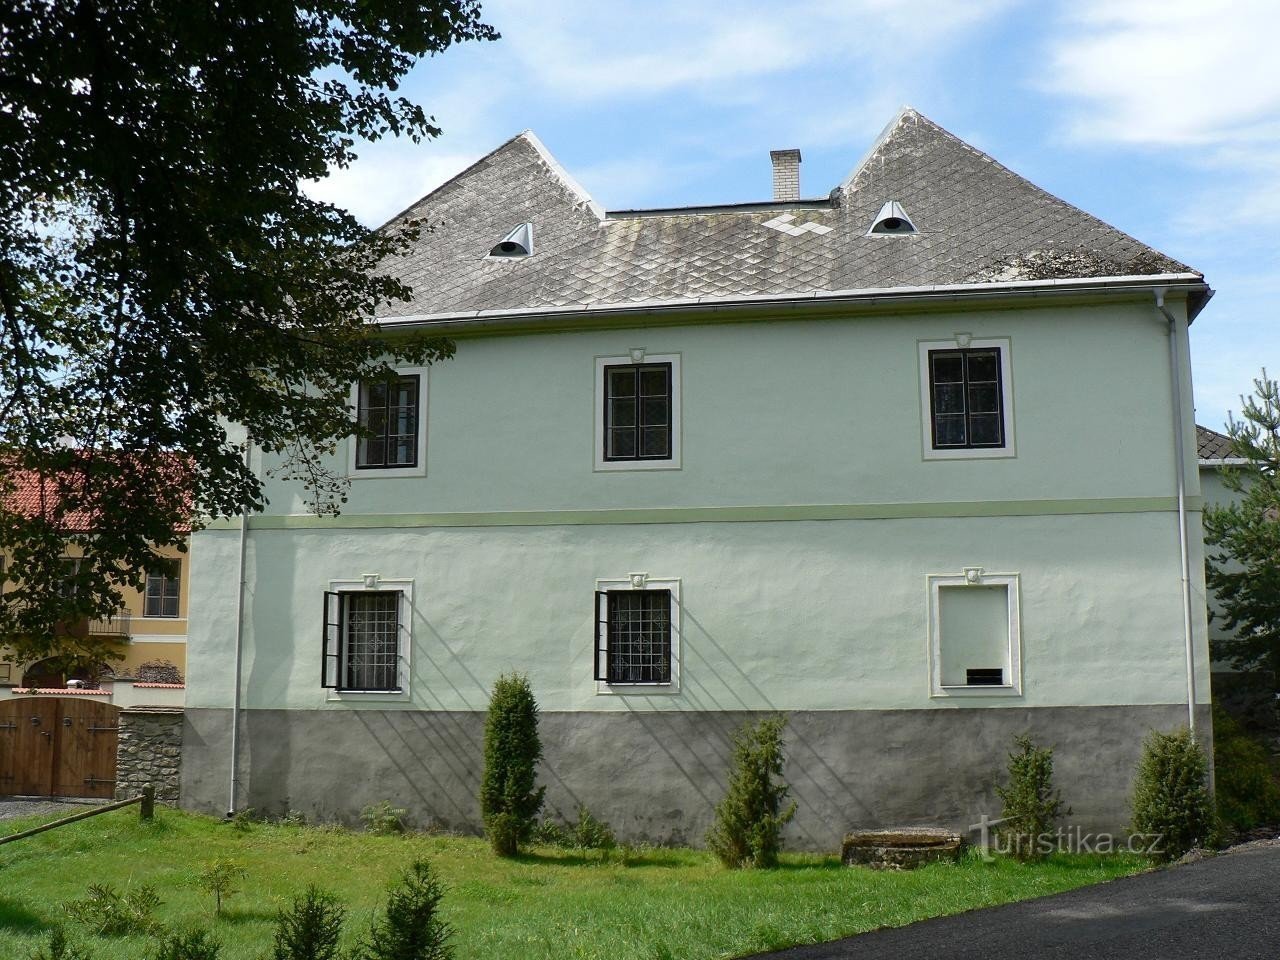 Jindřichovice, altes Schloss